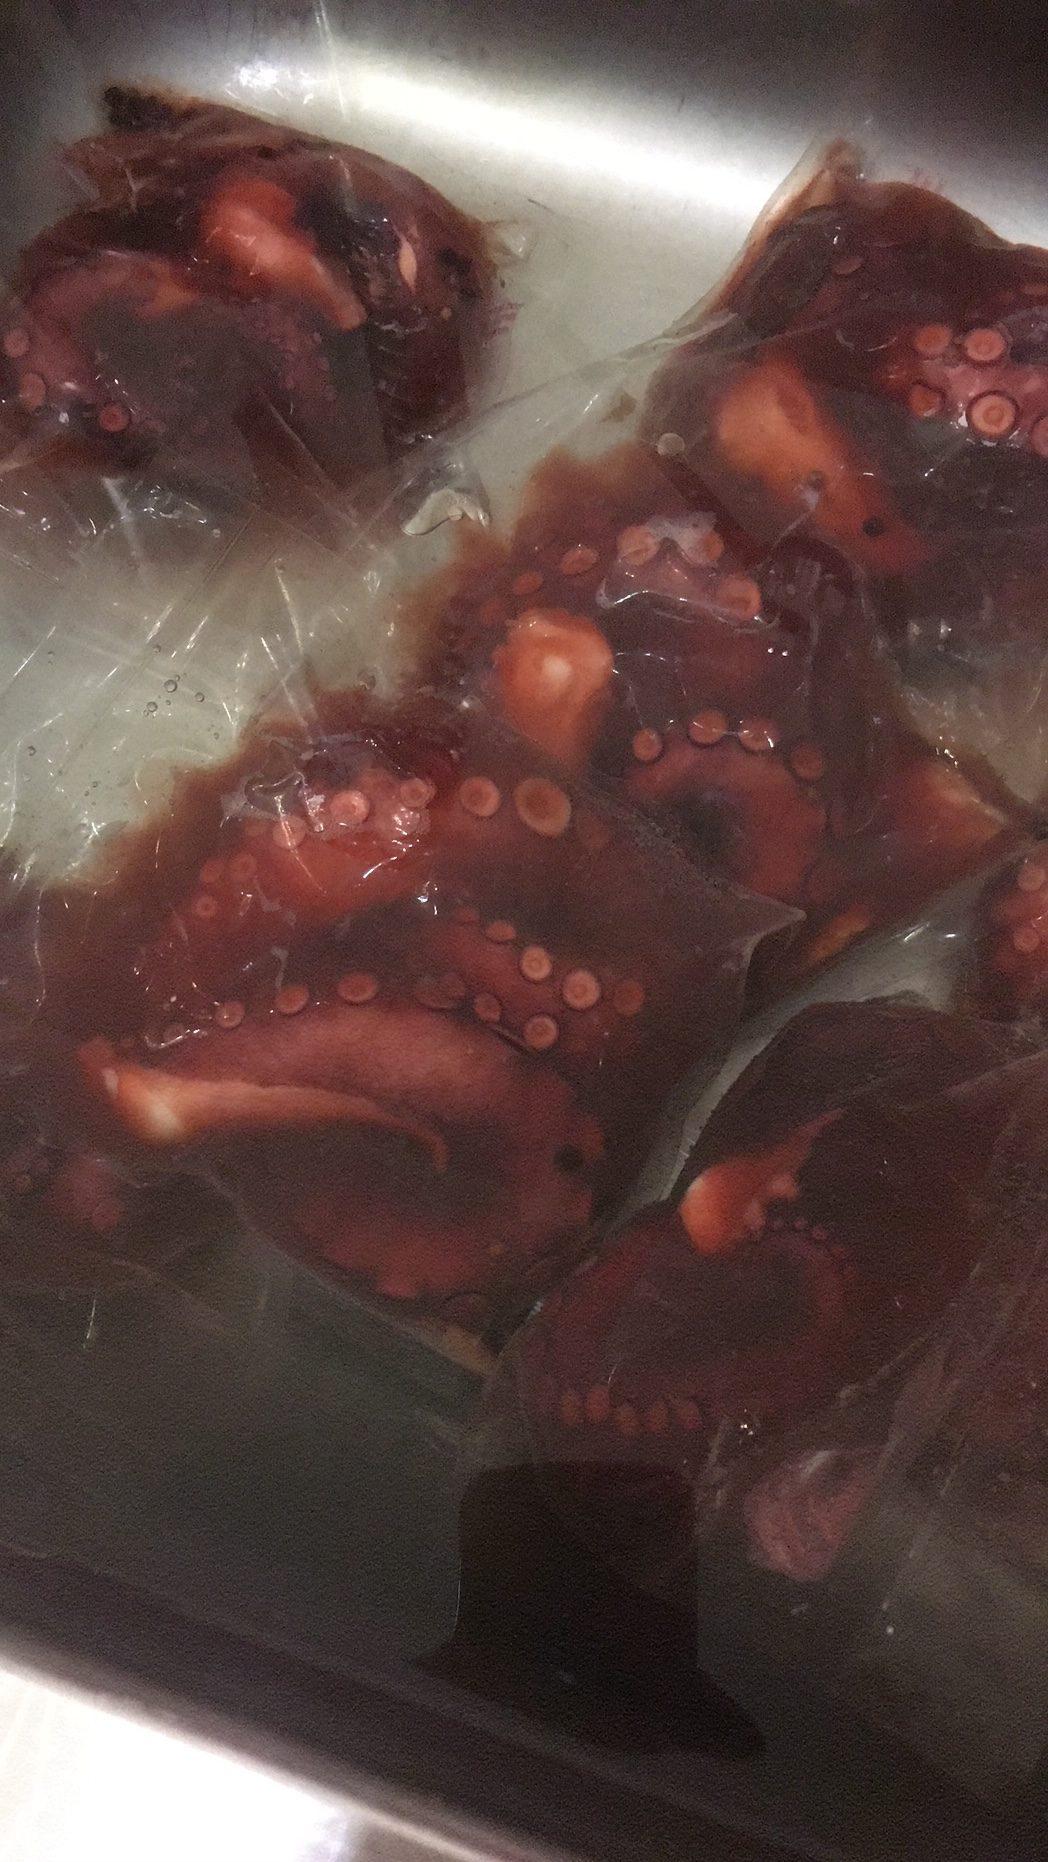 Oktopus sous vide